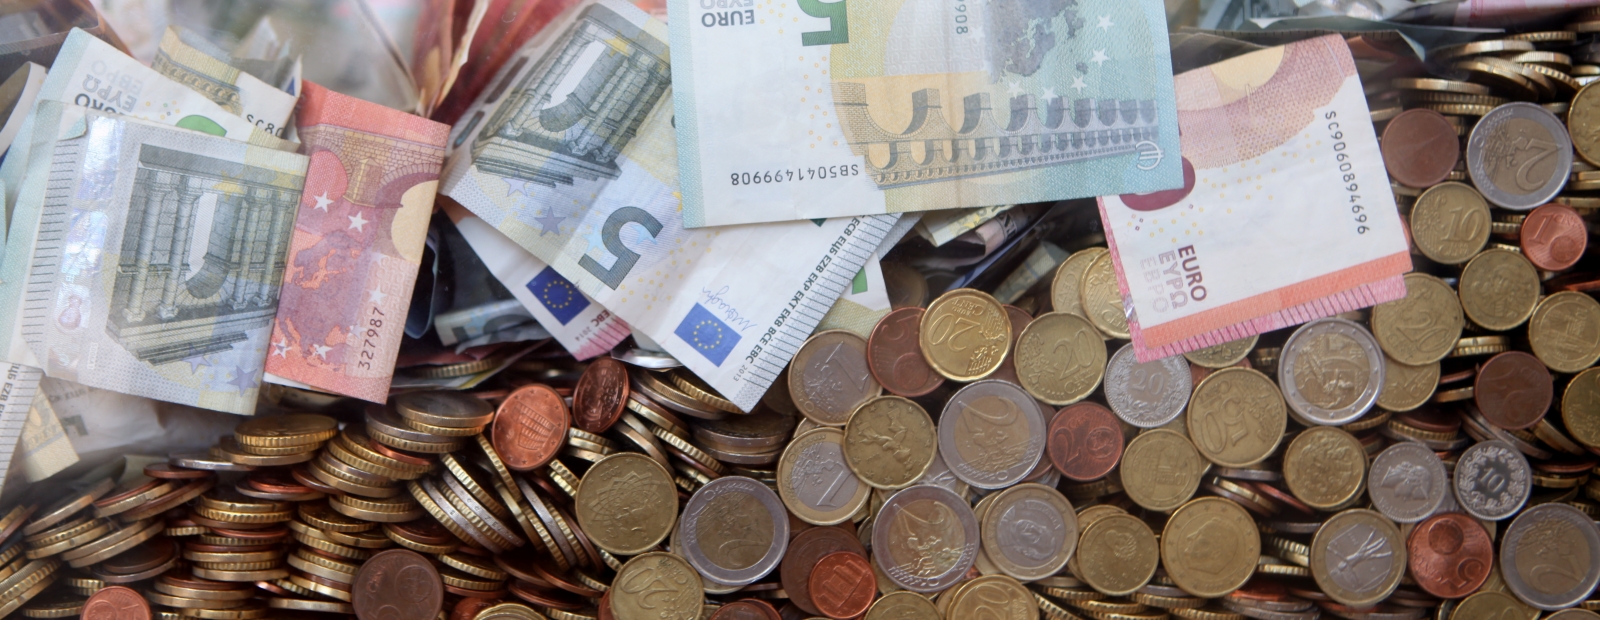 Cik daudz naudas vajadzētu, lai mēnesī varētu nopelnīt eiro pasīvajos ienākumos? | photographybymm.com